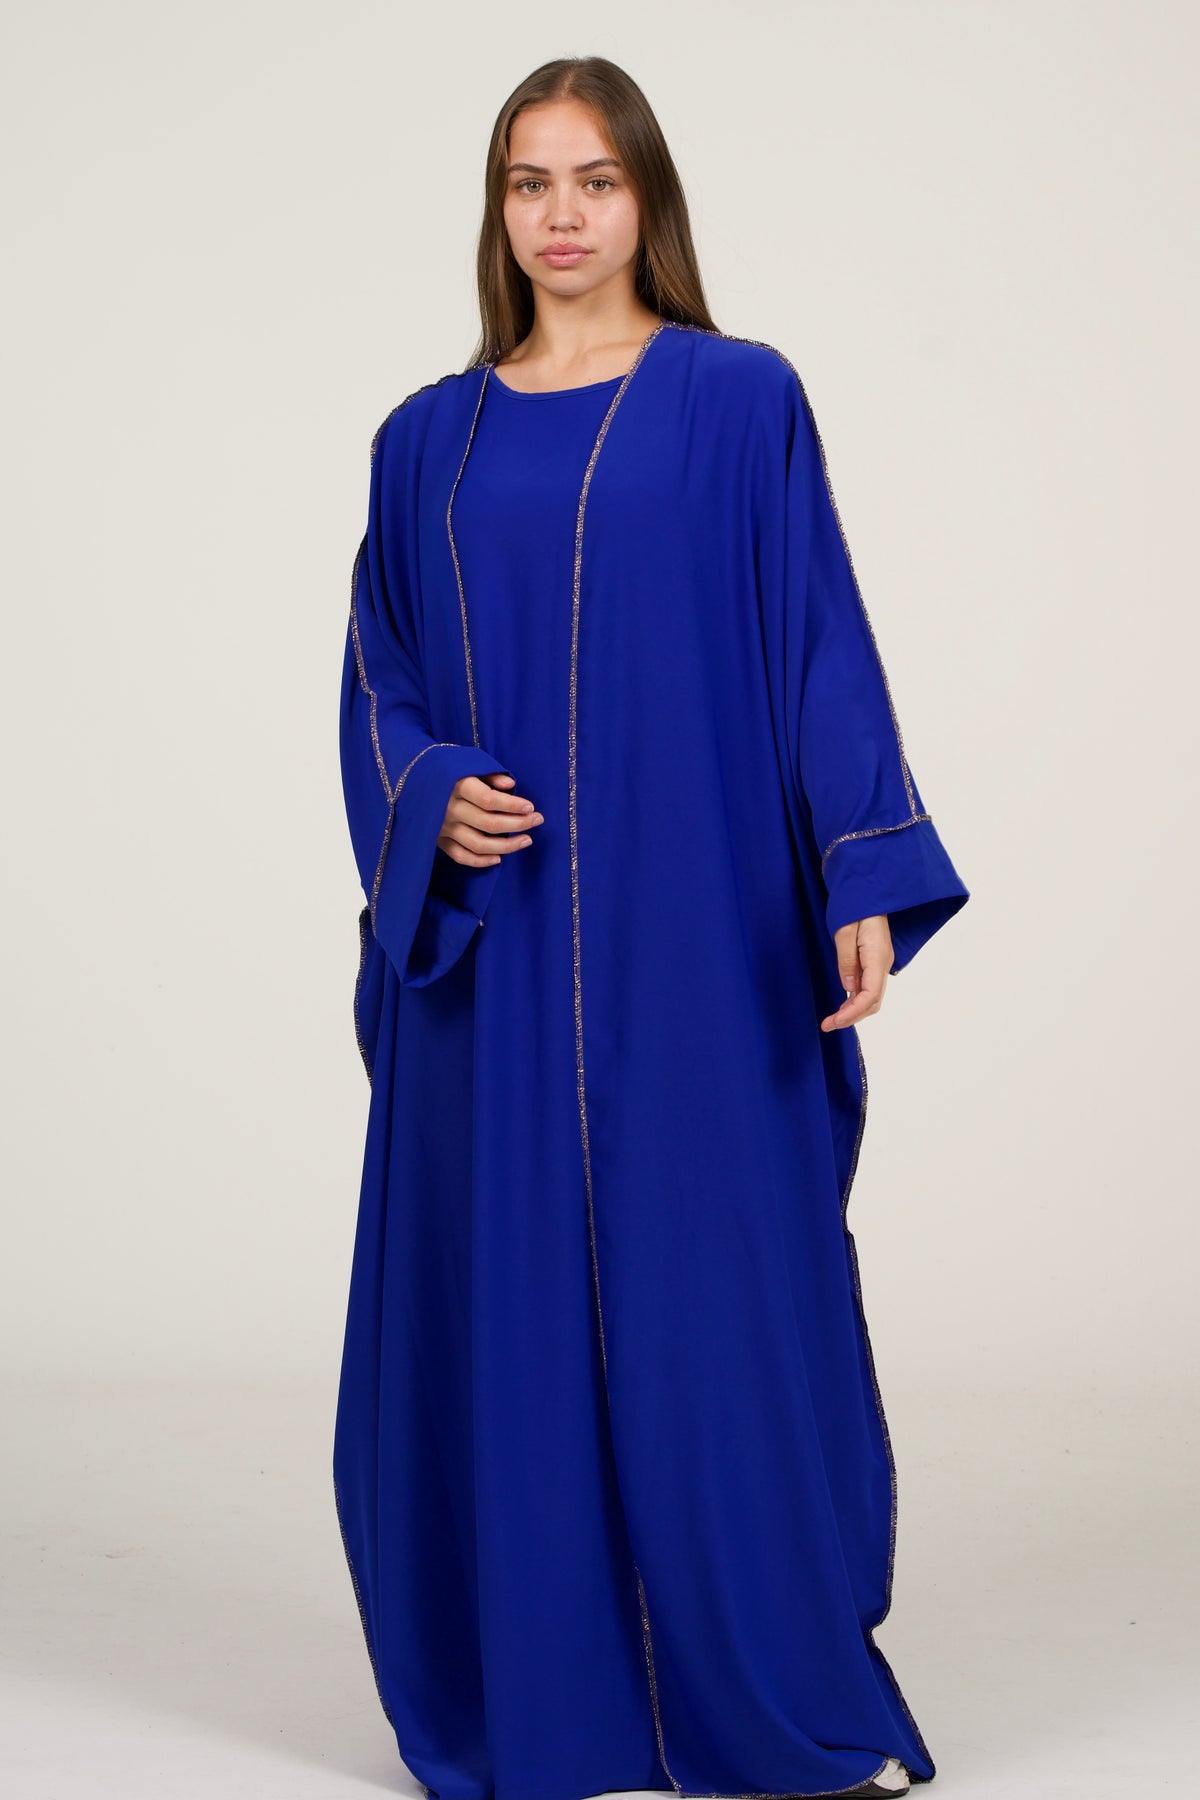 Dark Blue Abaya Set With Golden Details